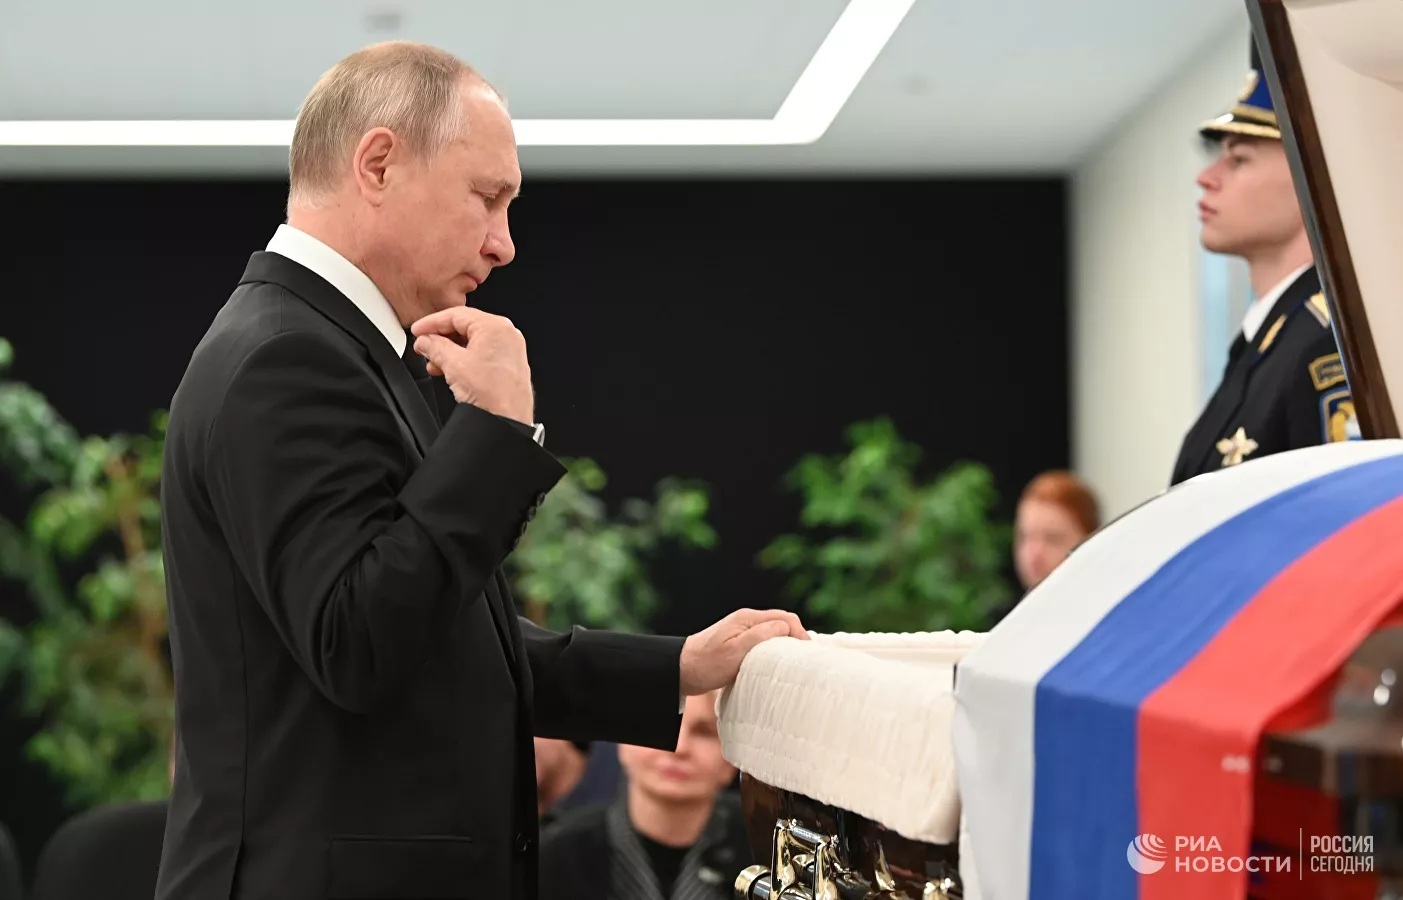 Khoảnh khắc xúc động ông Putin tiễn biệt Bộ trưởng Bộ Tình trạng khẩn cấp Nga